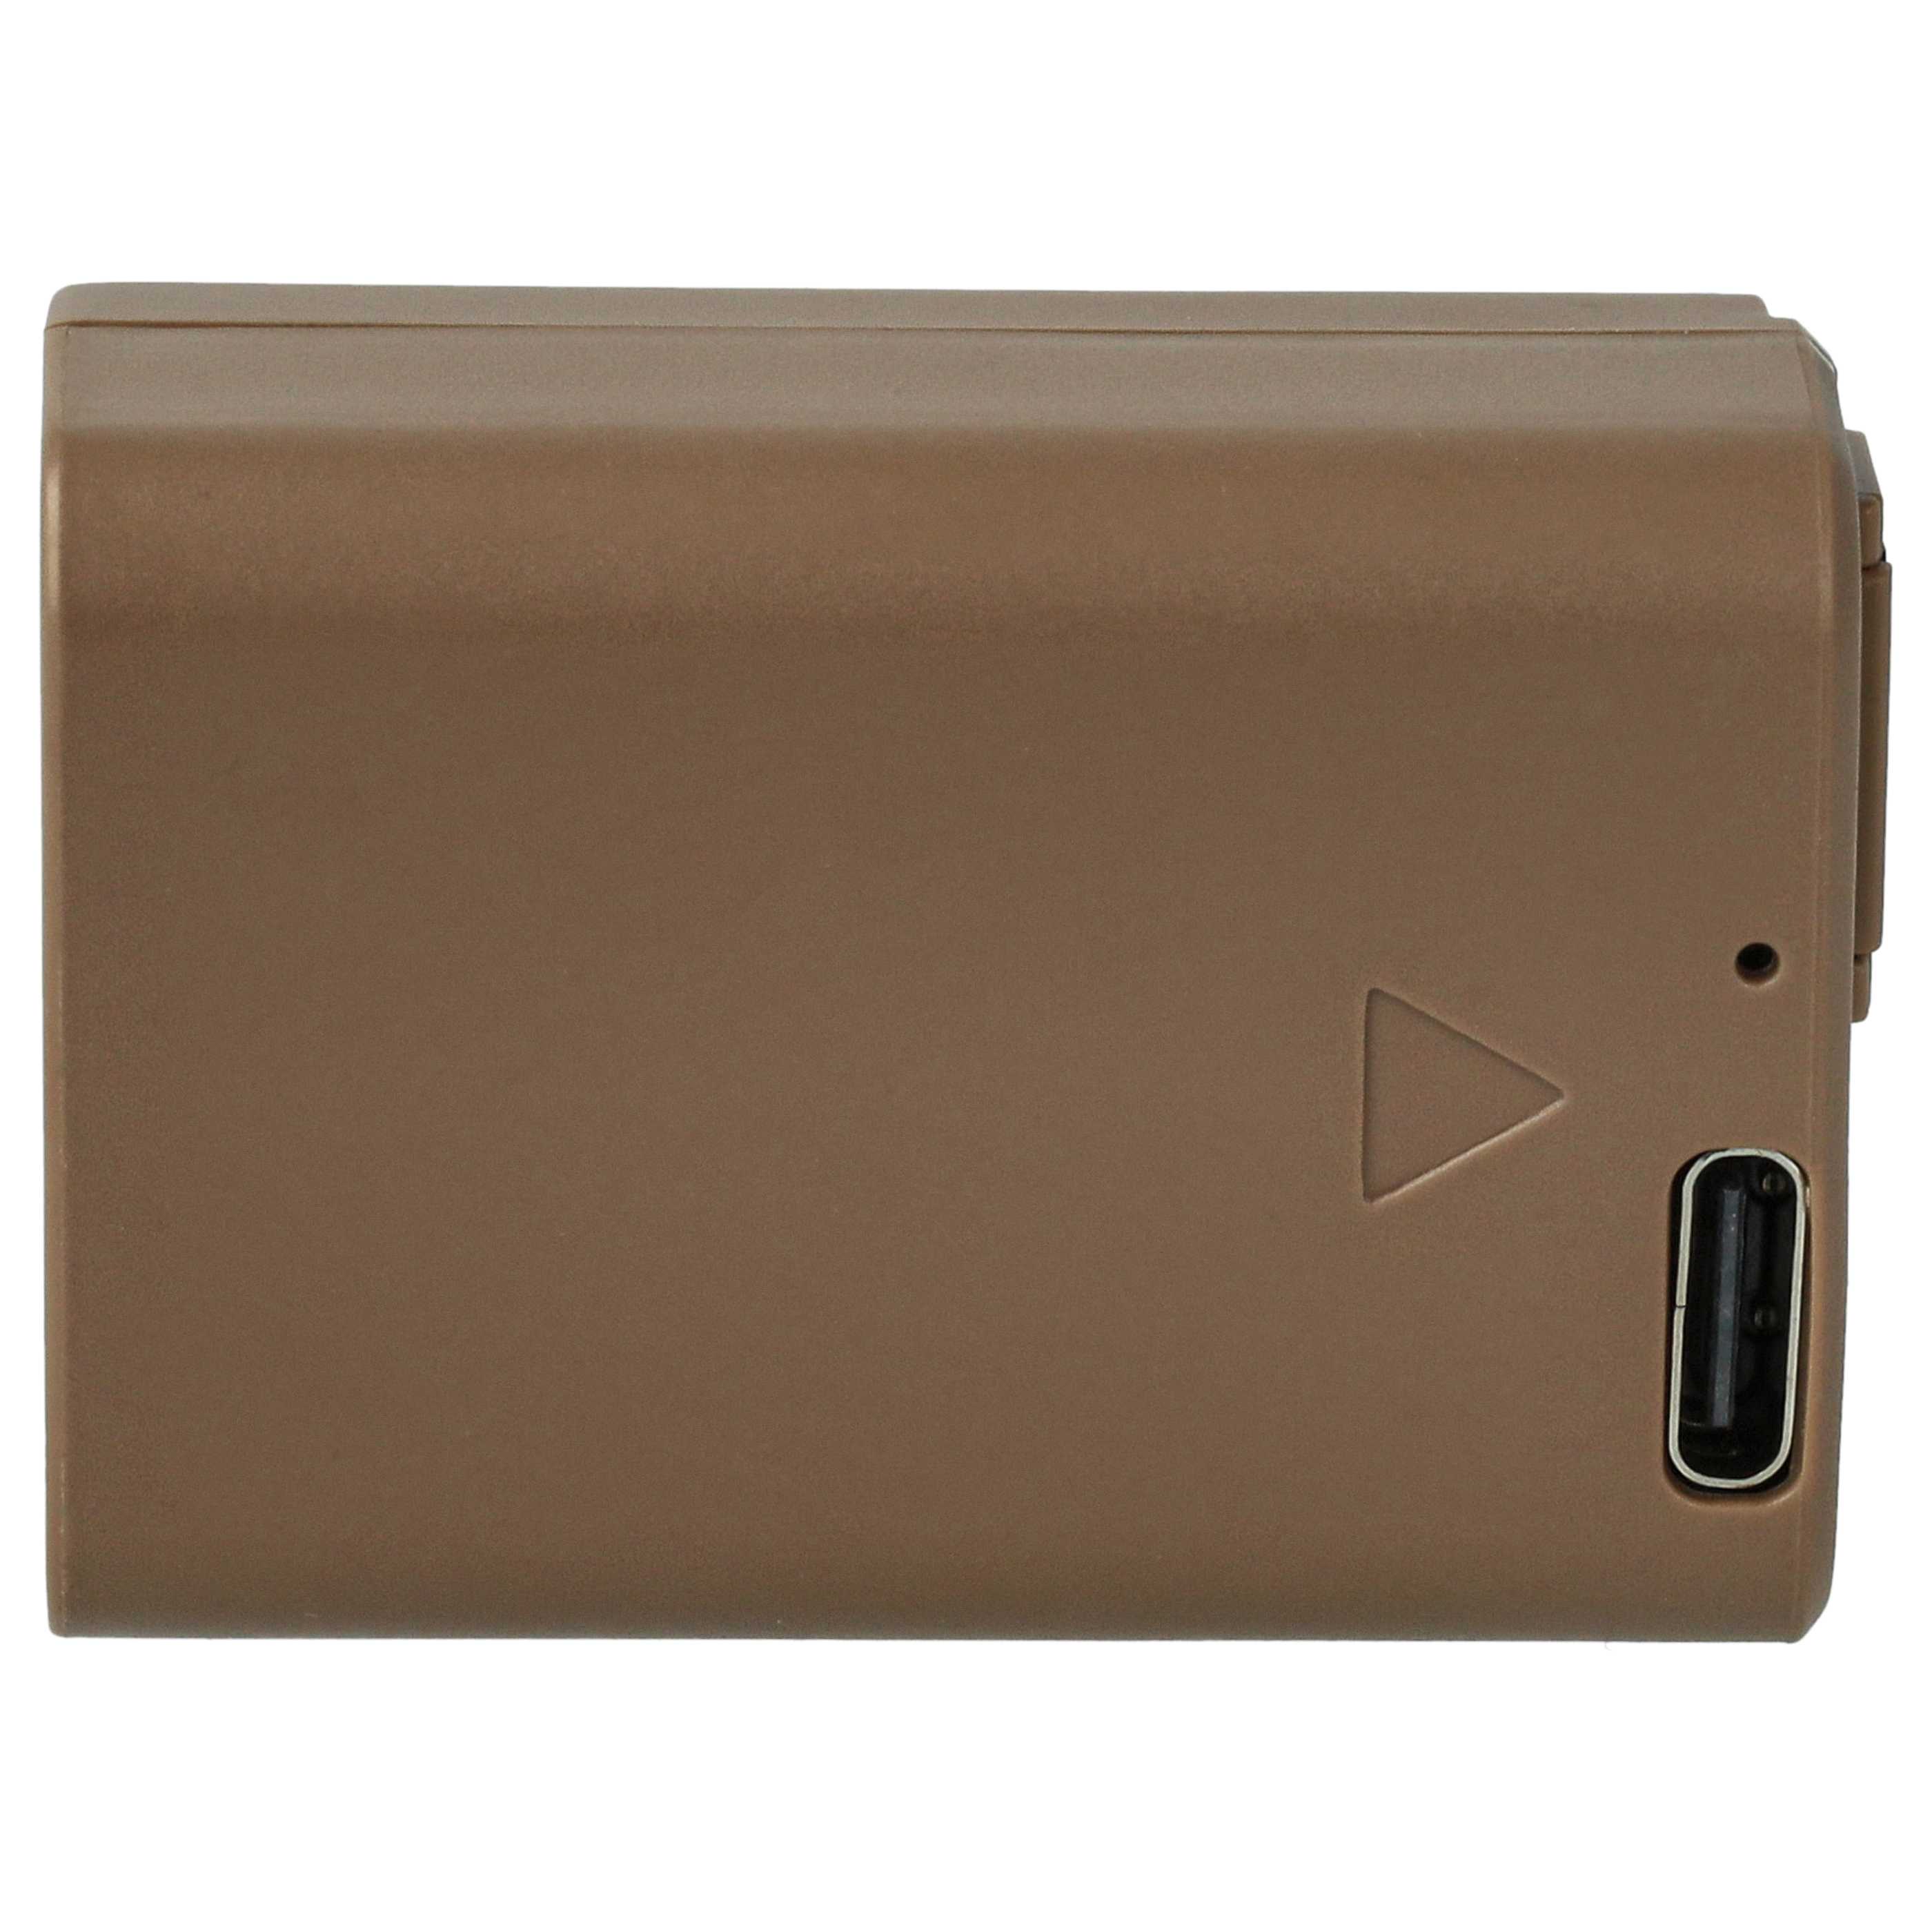 Kamera-Akku als Ersatz für Sony NP-FW50 - 1030mAh 7,4V Li-Ion mit Infochip, mit USB-C Buchse